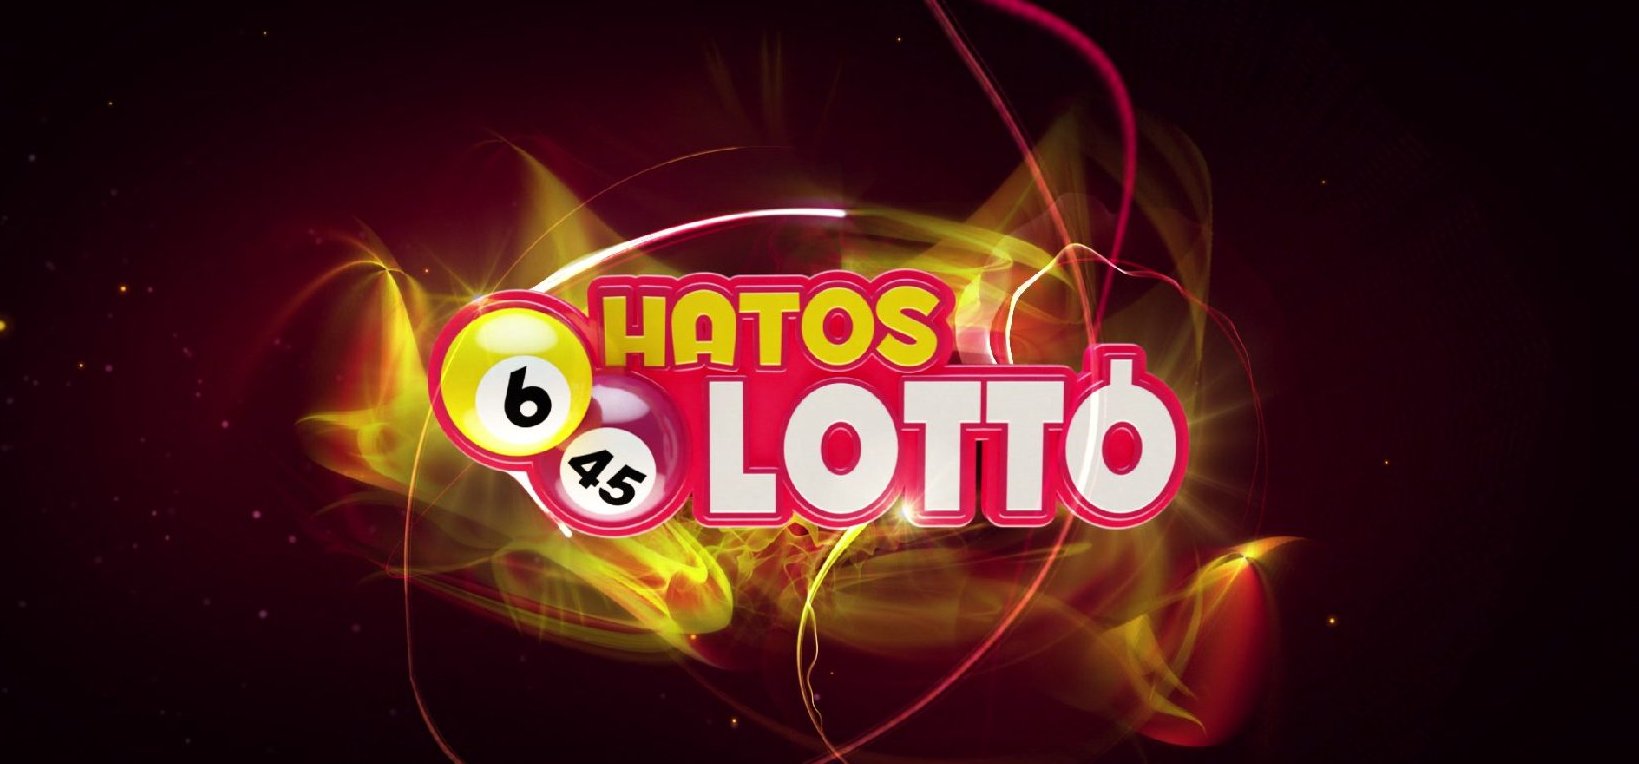 Ilyen még sosem volt a hatos lottó történetében – Lehet rögtön fel is fogsz adni egy szelvényt